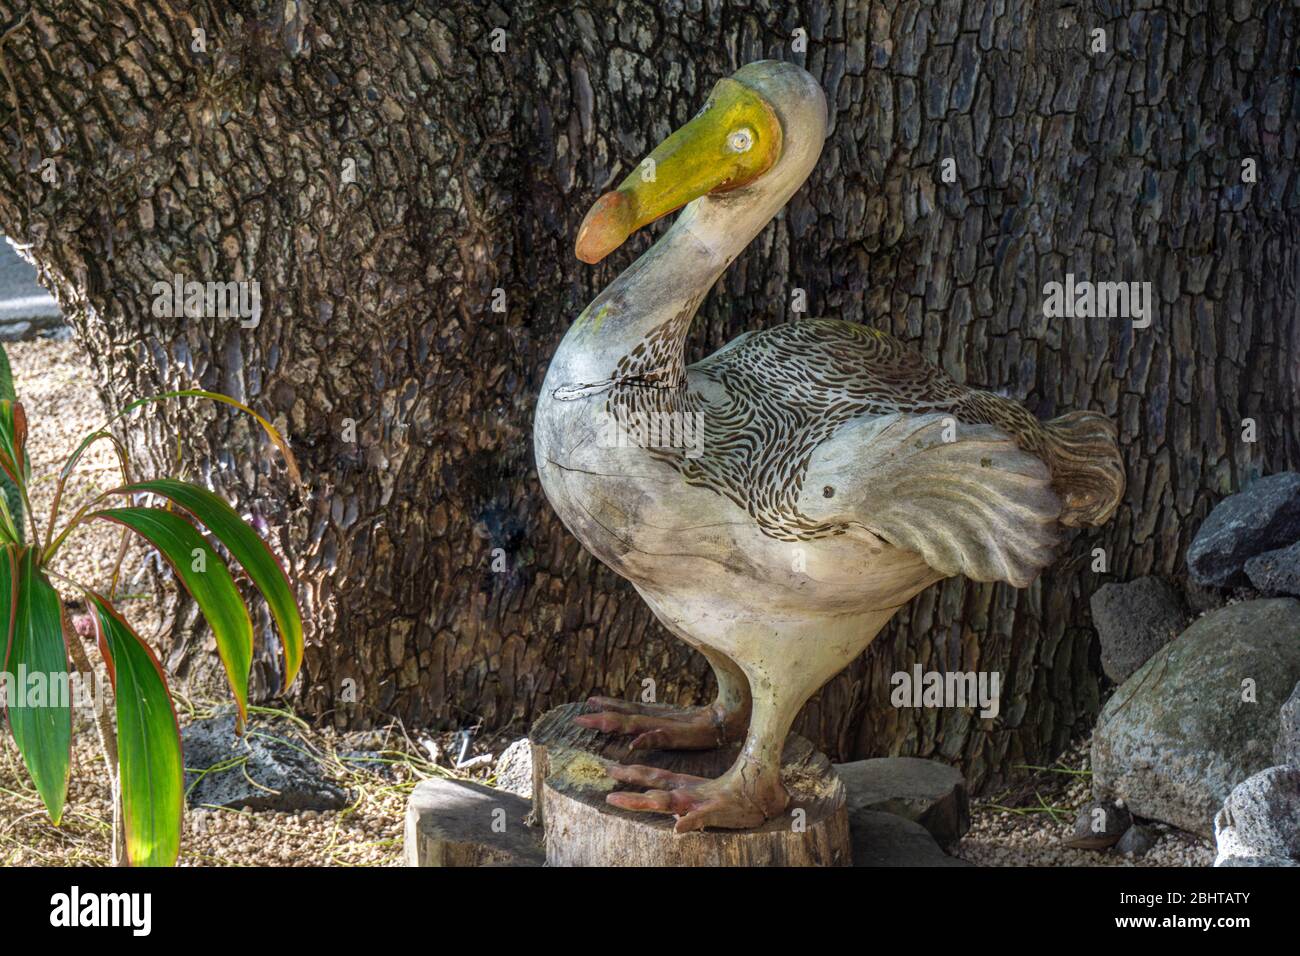 Mauritius island, December 2019 - A decorative garden sculpture of the extinct Dodo bird endemic to the island Stock Photo